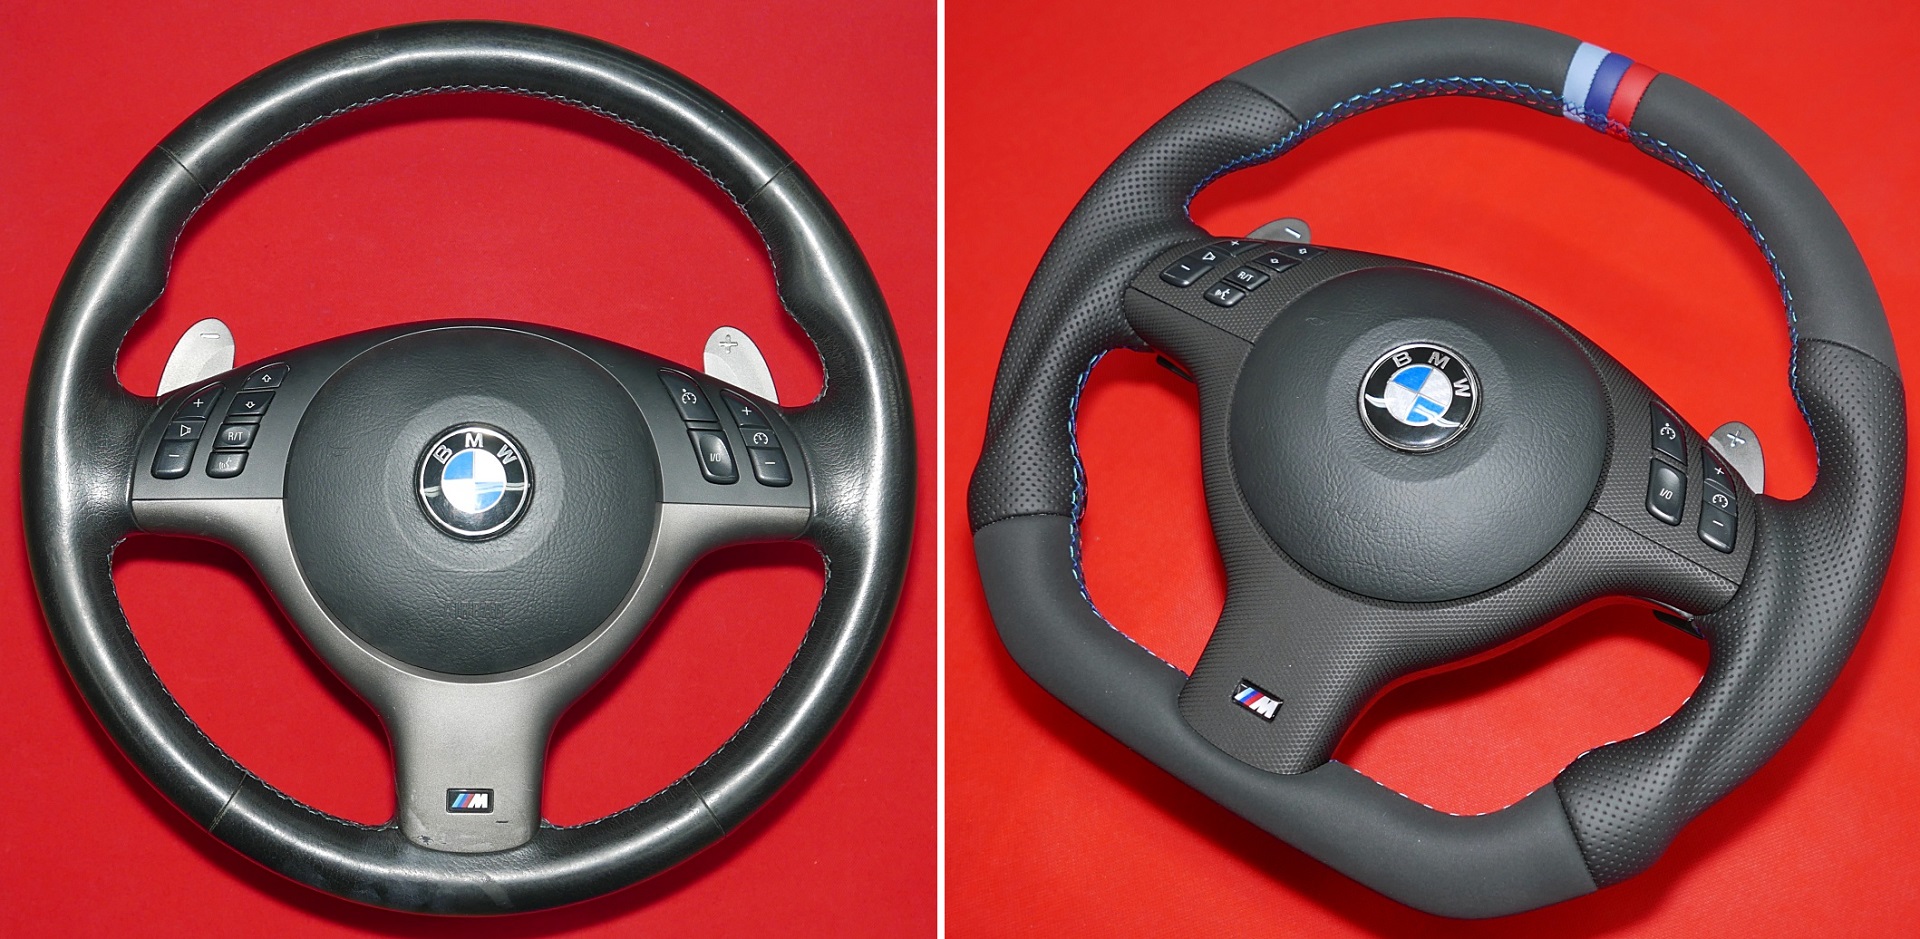 Kierownica BMW E39 E46 M3 M5 Mpakiet MPerformance tuning modyfikacja zmiana kształtu